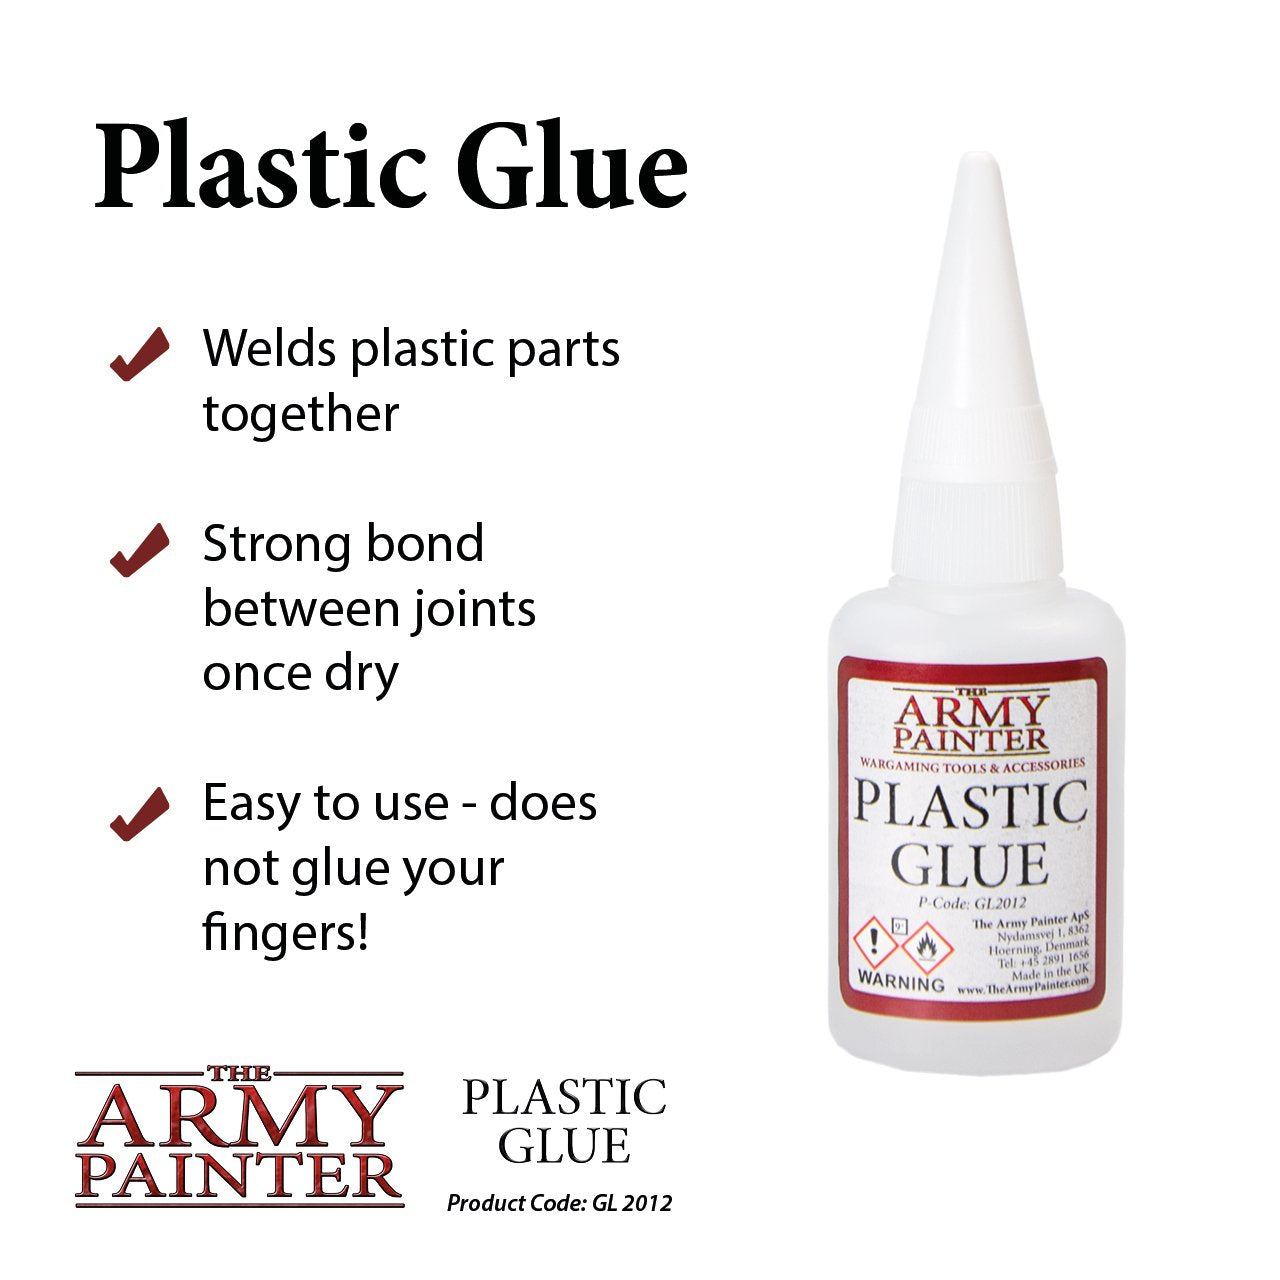 Plastic Glue - Linebreakers